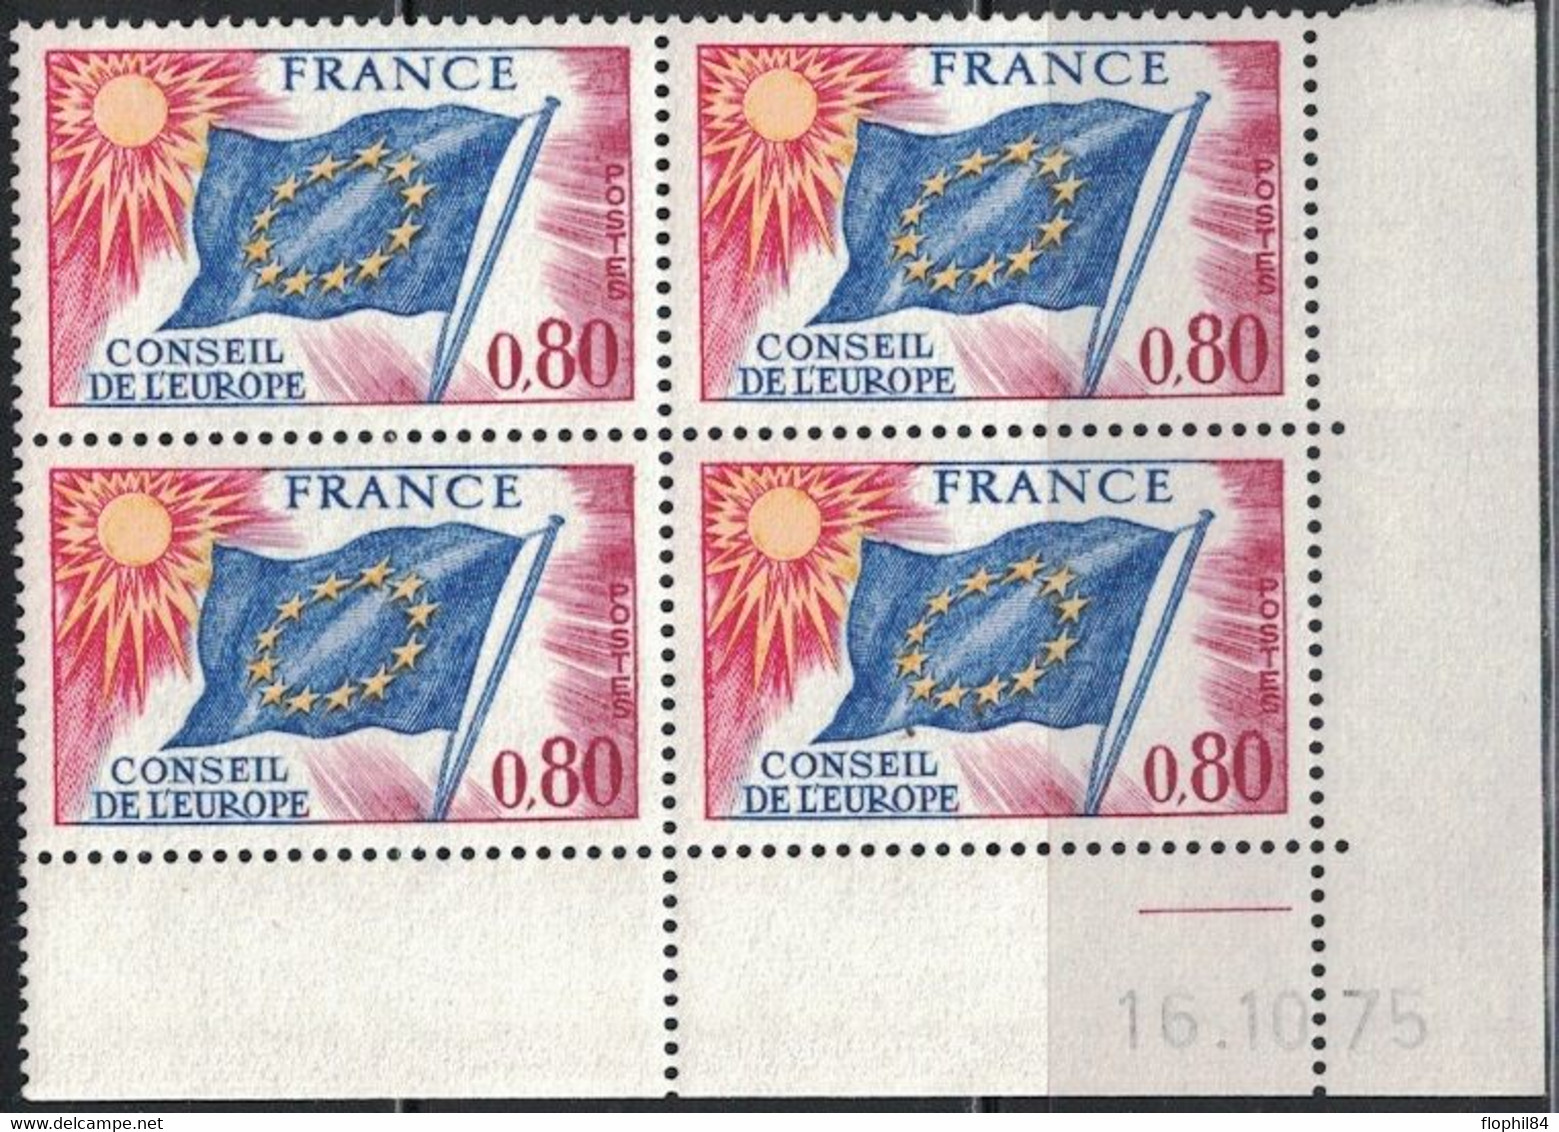 COIN DATE - SERVICE N°47 - 0f80 - CONSEIL DE L'EUROPE - 16-10-1975 - Cote 10€. - Servicio